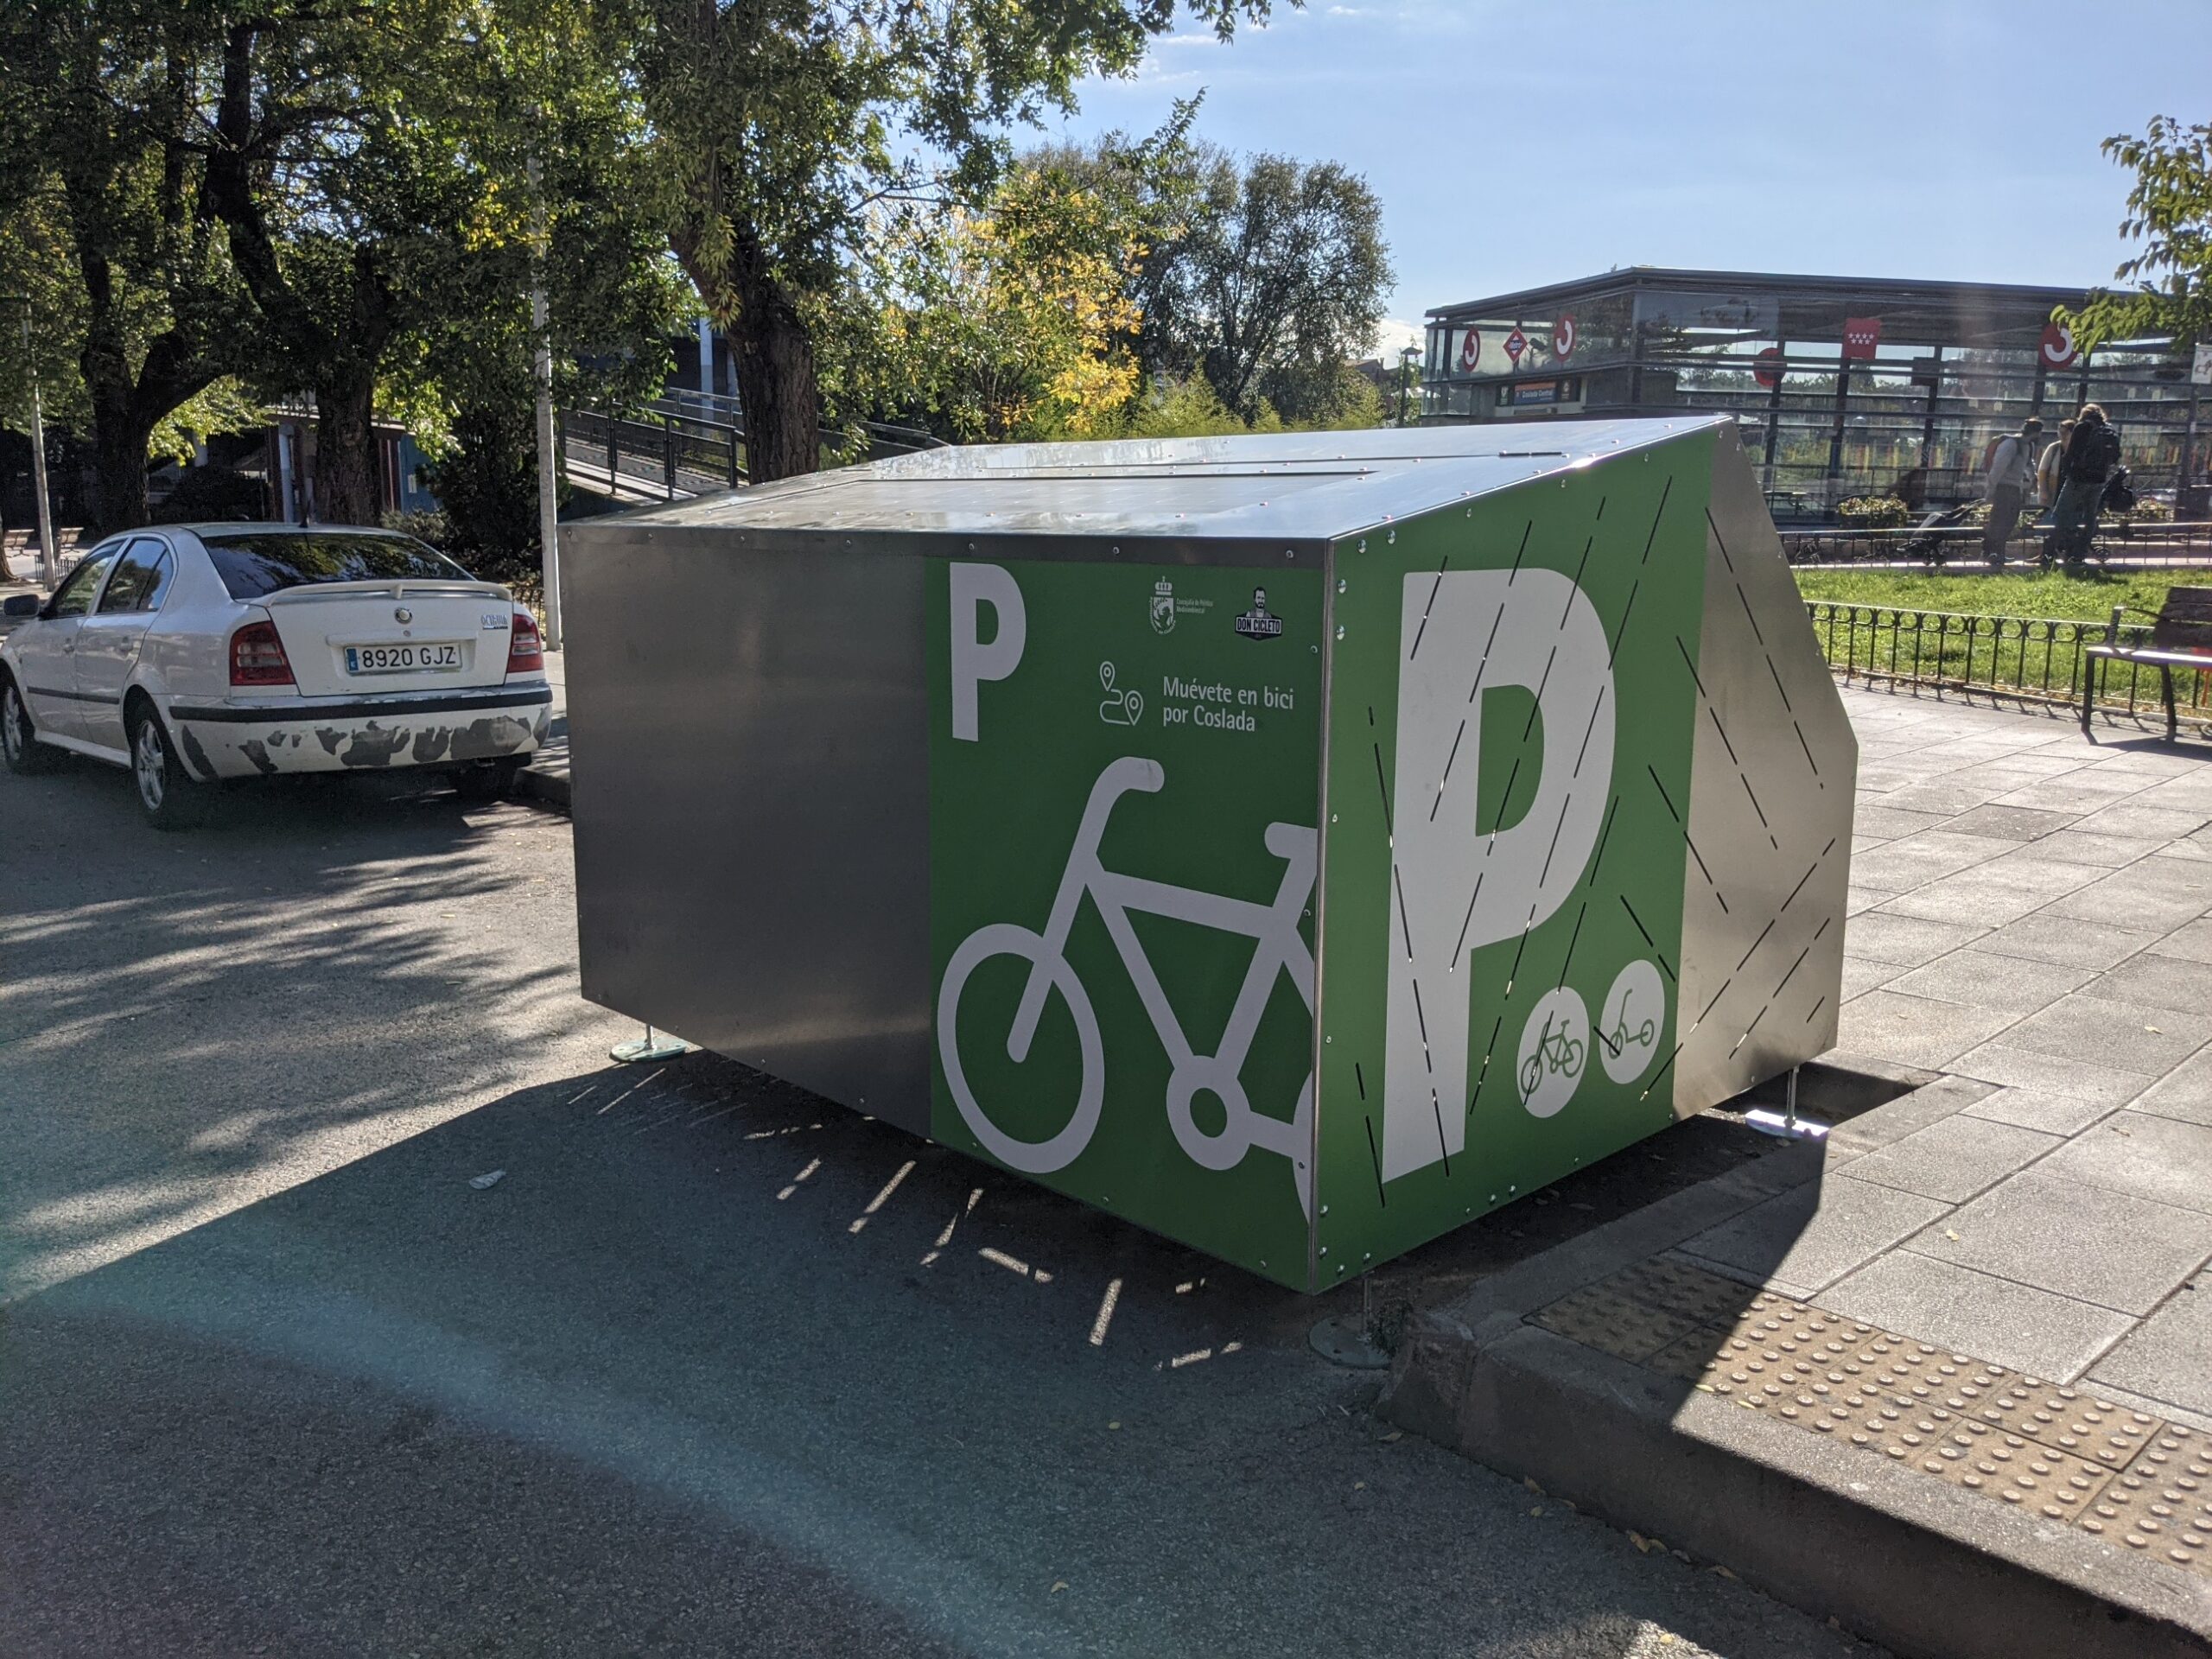 Bicihangar', el nuevo aparcamiento cerrado para bicicletas – Centro